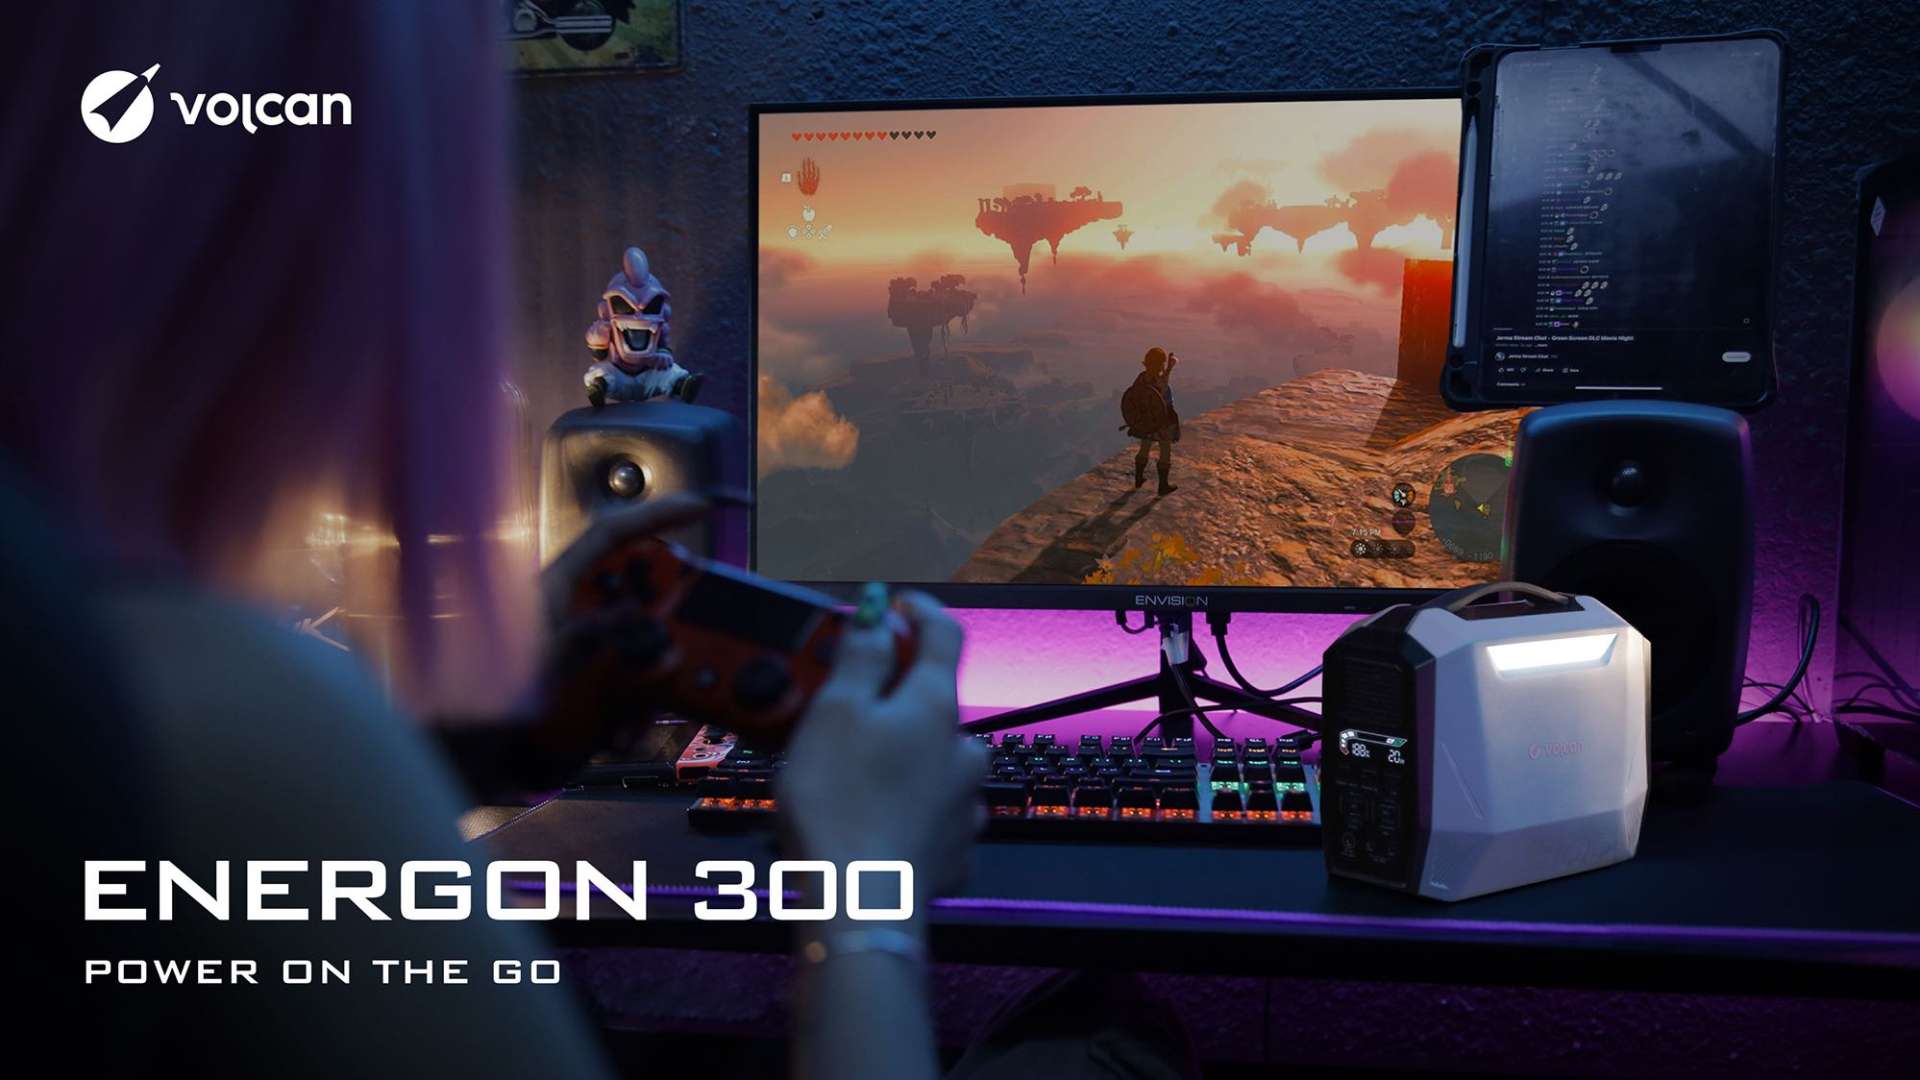 专为游戏玩家量身打造的便携迷你移动电源Energon 300！